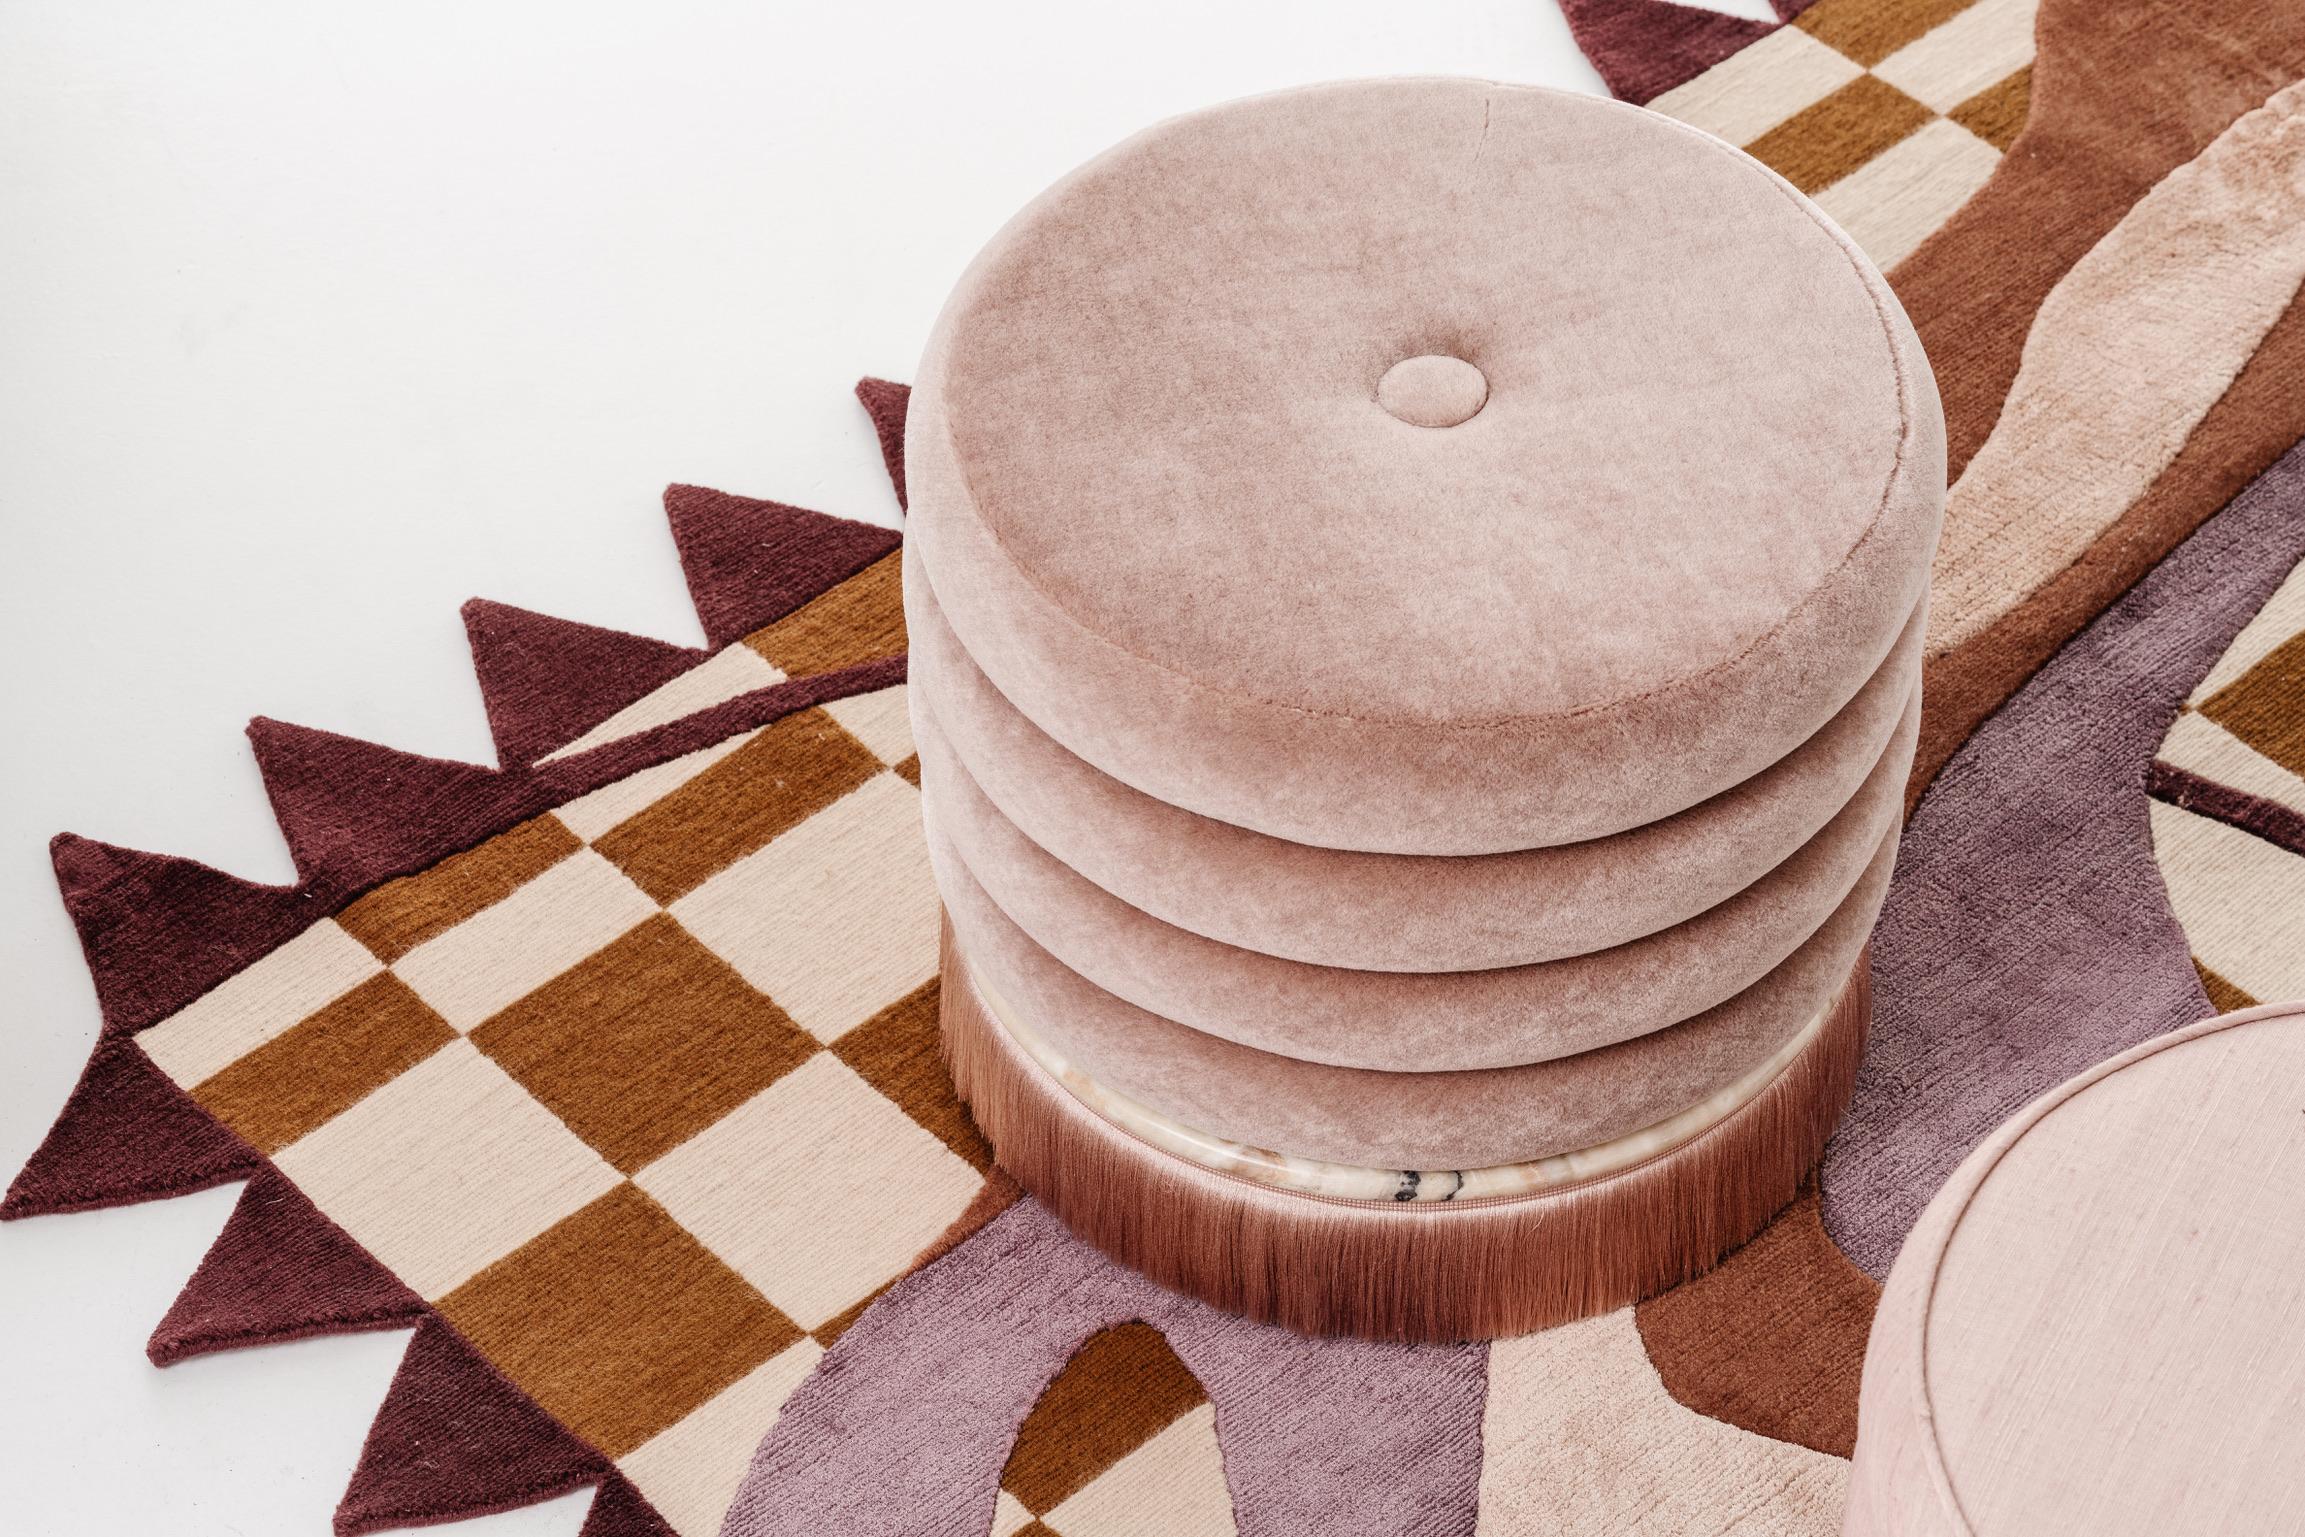 Der Name der Collection'S leitet sich von dem mehrstufigen Design der Tische und Hocker ab. Jedes Stück besteht aus Mohair-Stoff aus den Niederlanden, einer präzise geschnittenen Marmorplatte und handgefertigten Eichenbeinen.

Ziehen Sie sich mit